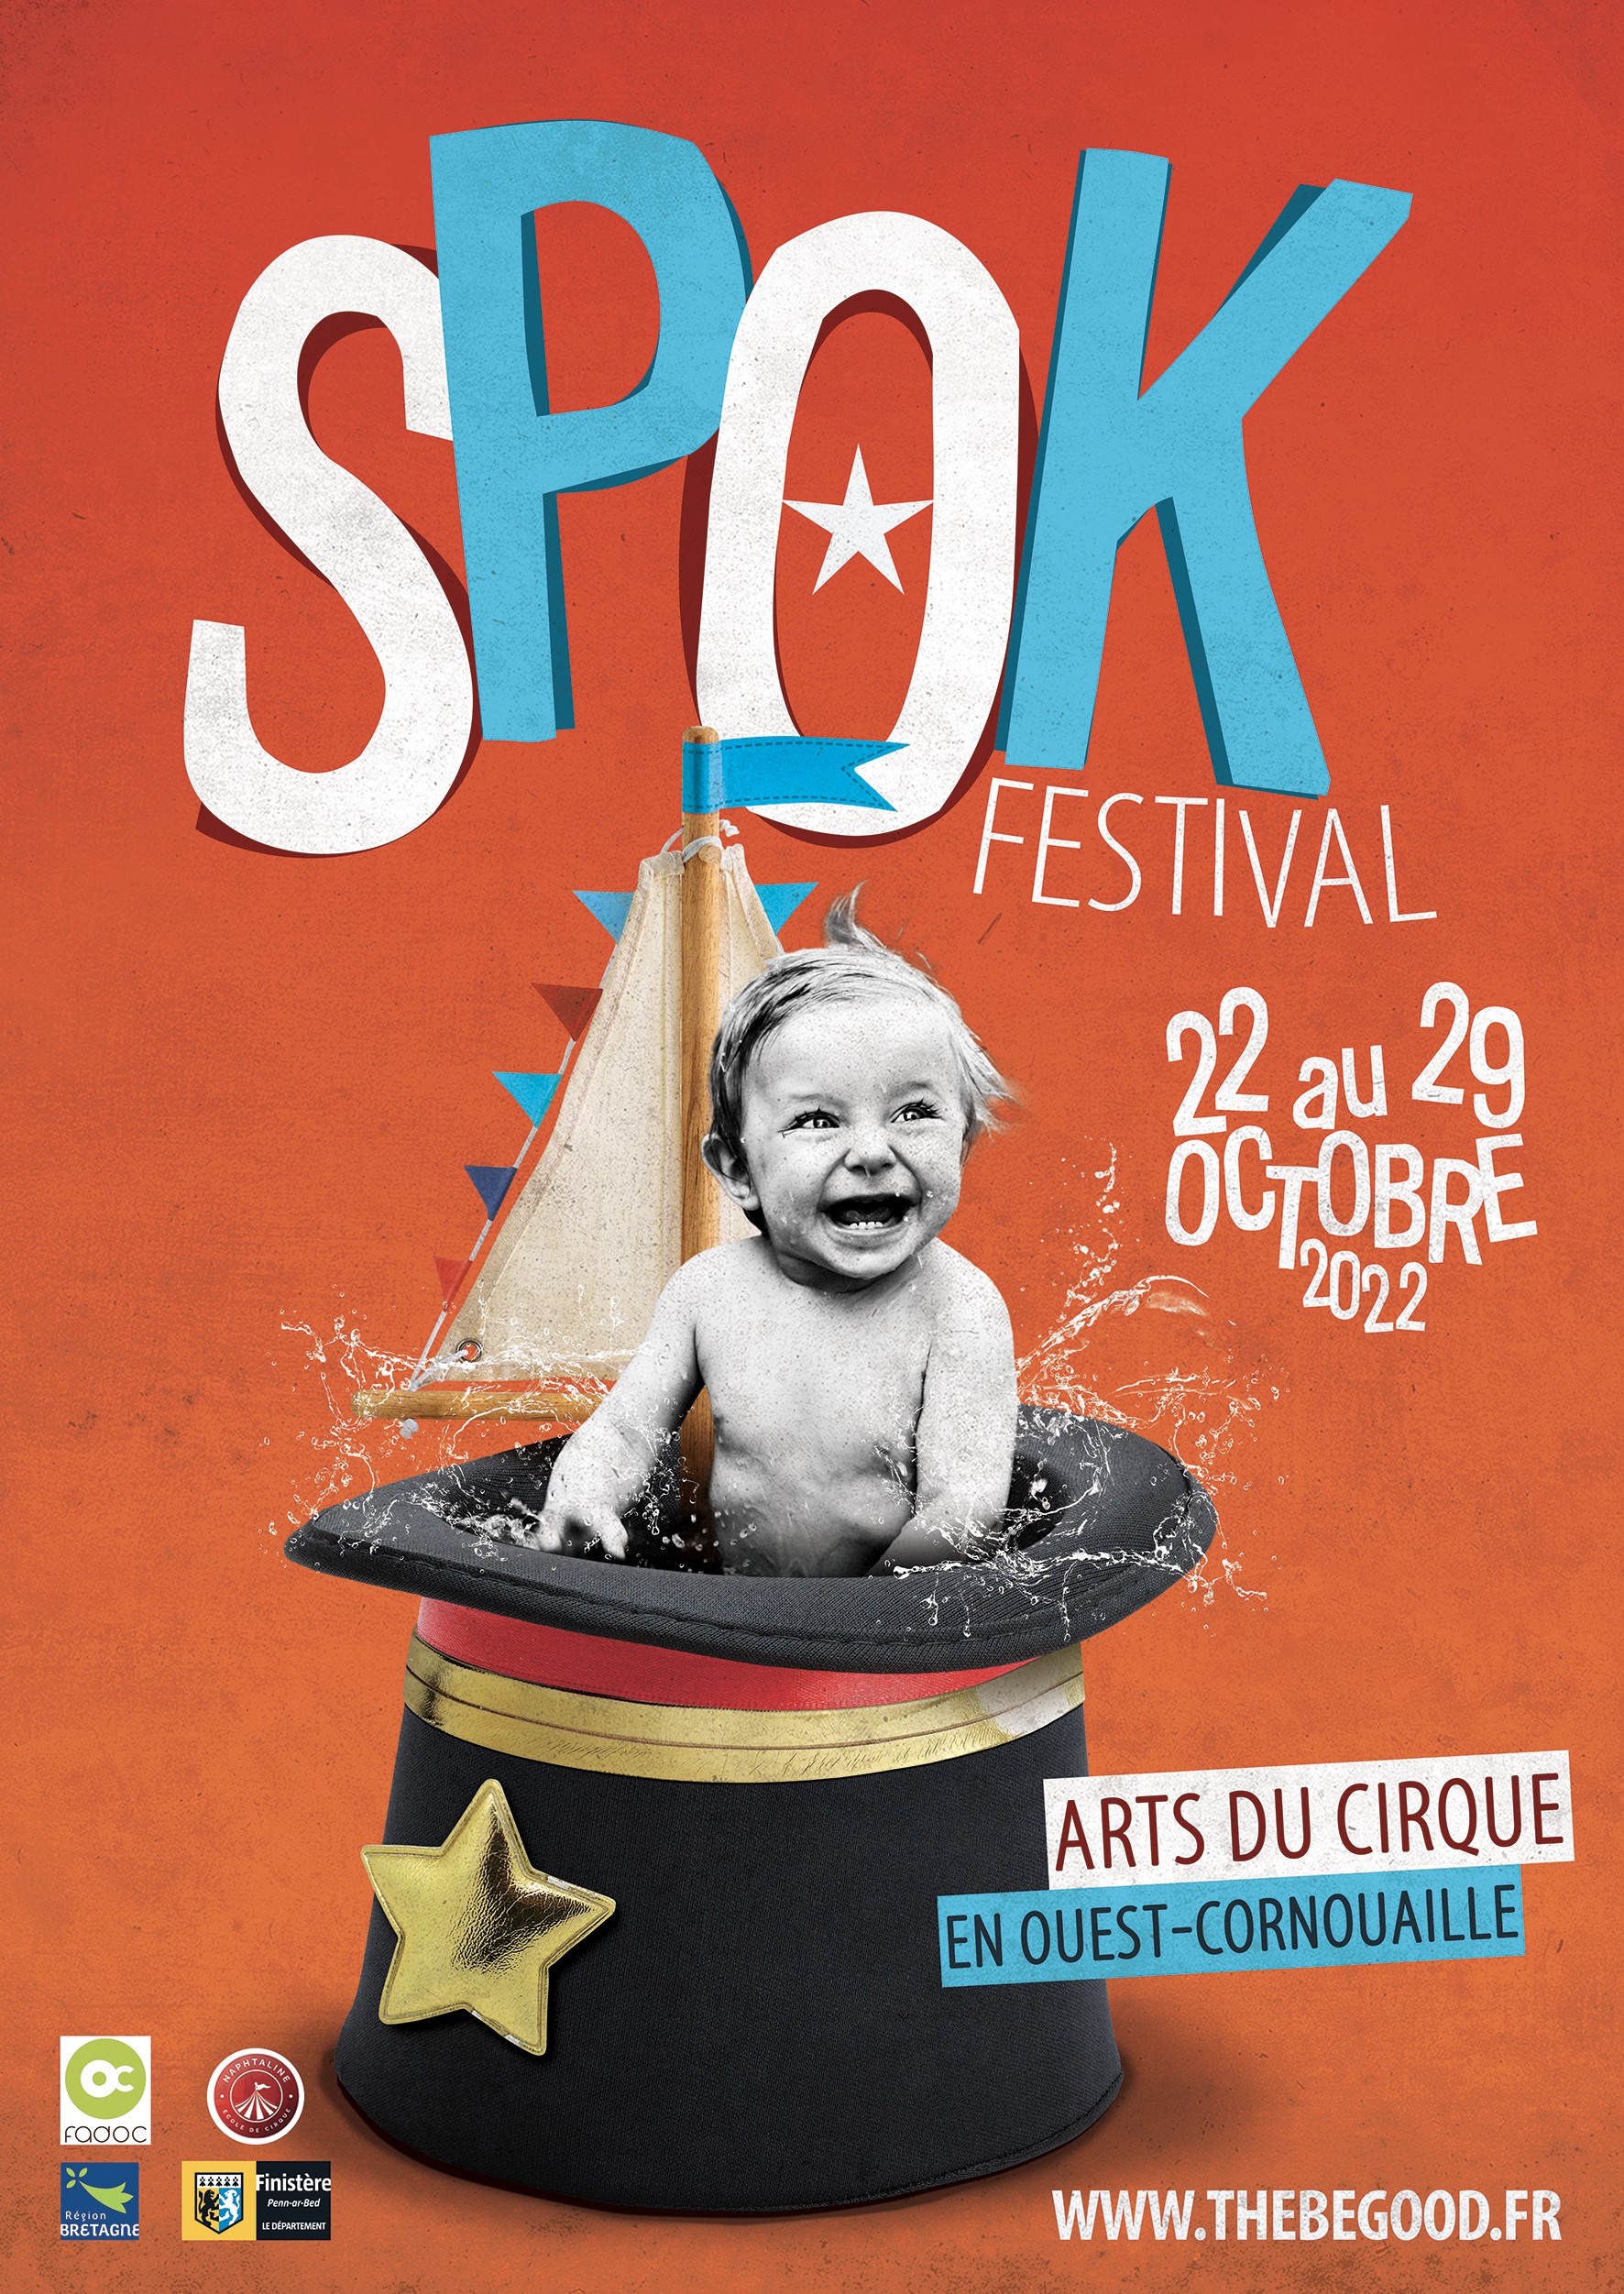 Spok Festival